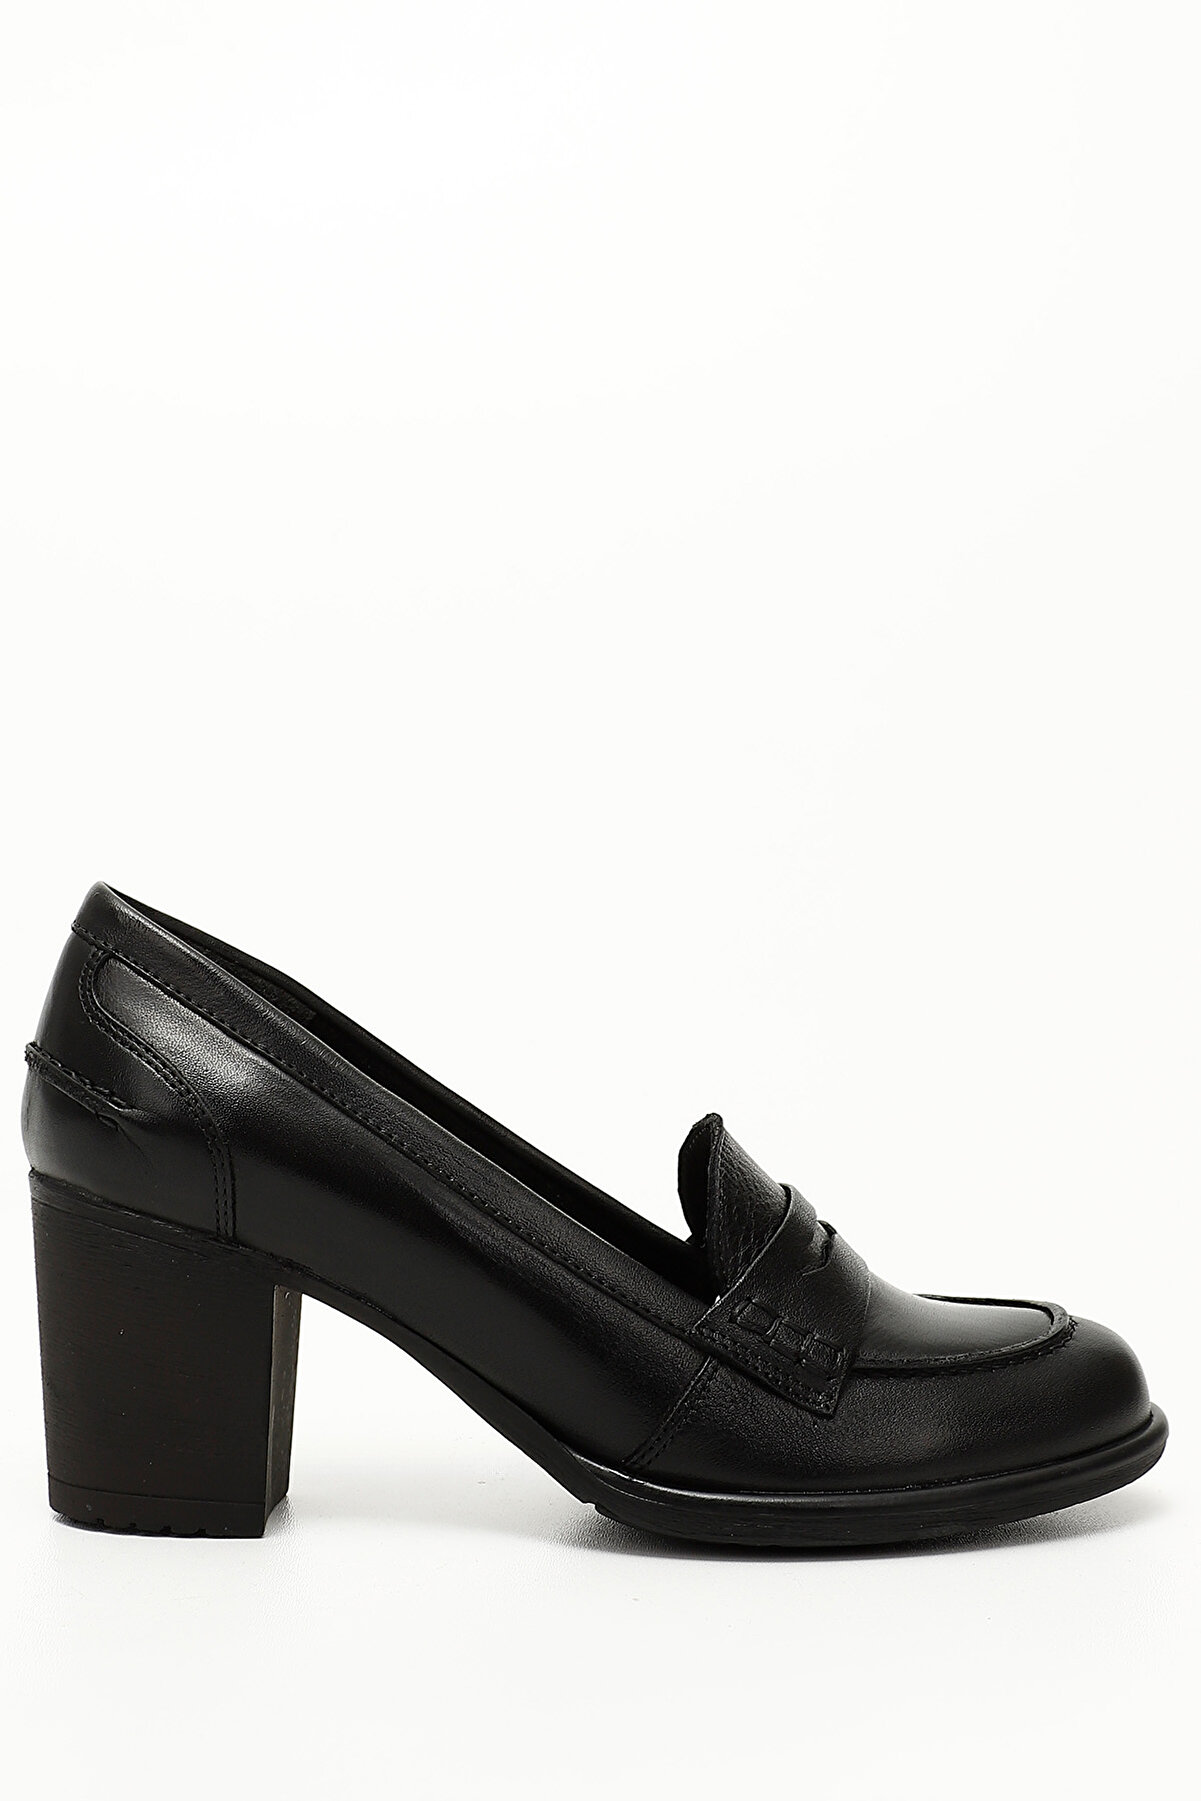 GÖNDERİ(R) Siyah Gön Hakiki Deri Yuvarlak Burun Kalın Topuklu Kauçuk Taban Loafer Kadın Ayakkabı 24072